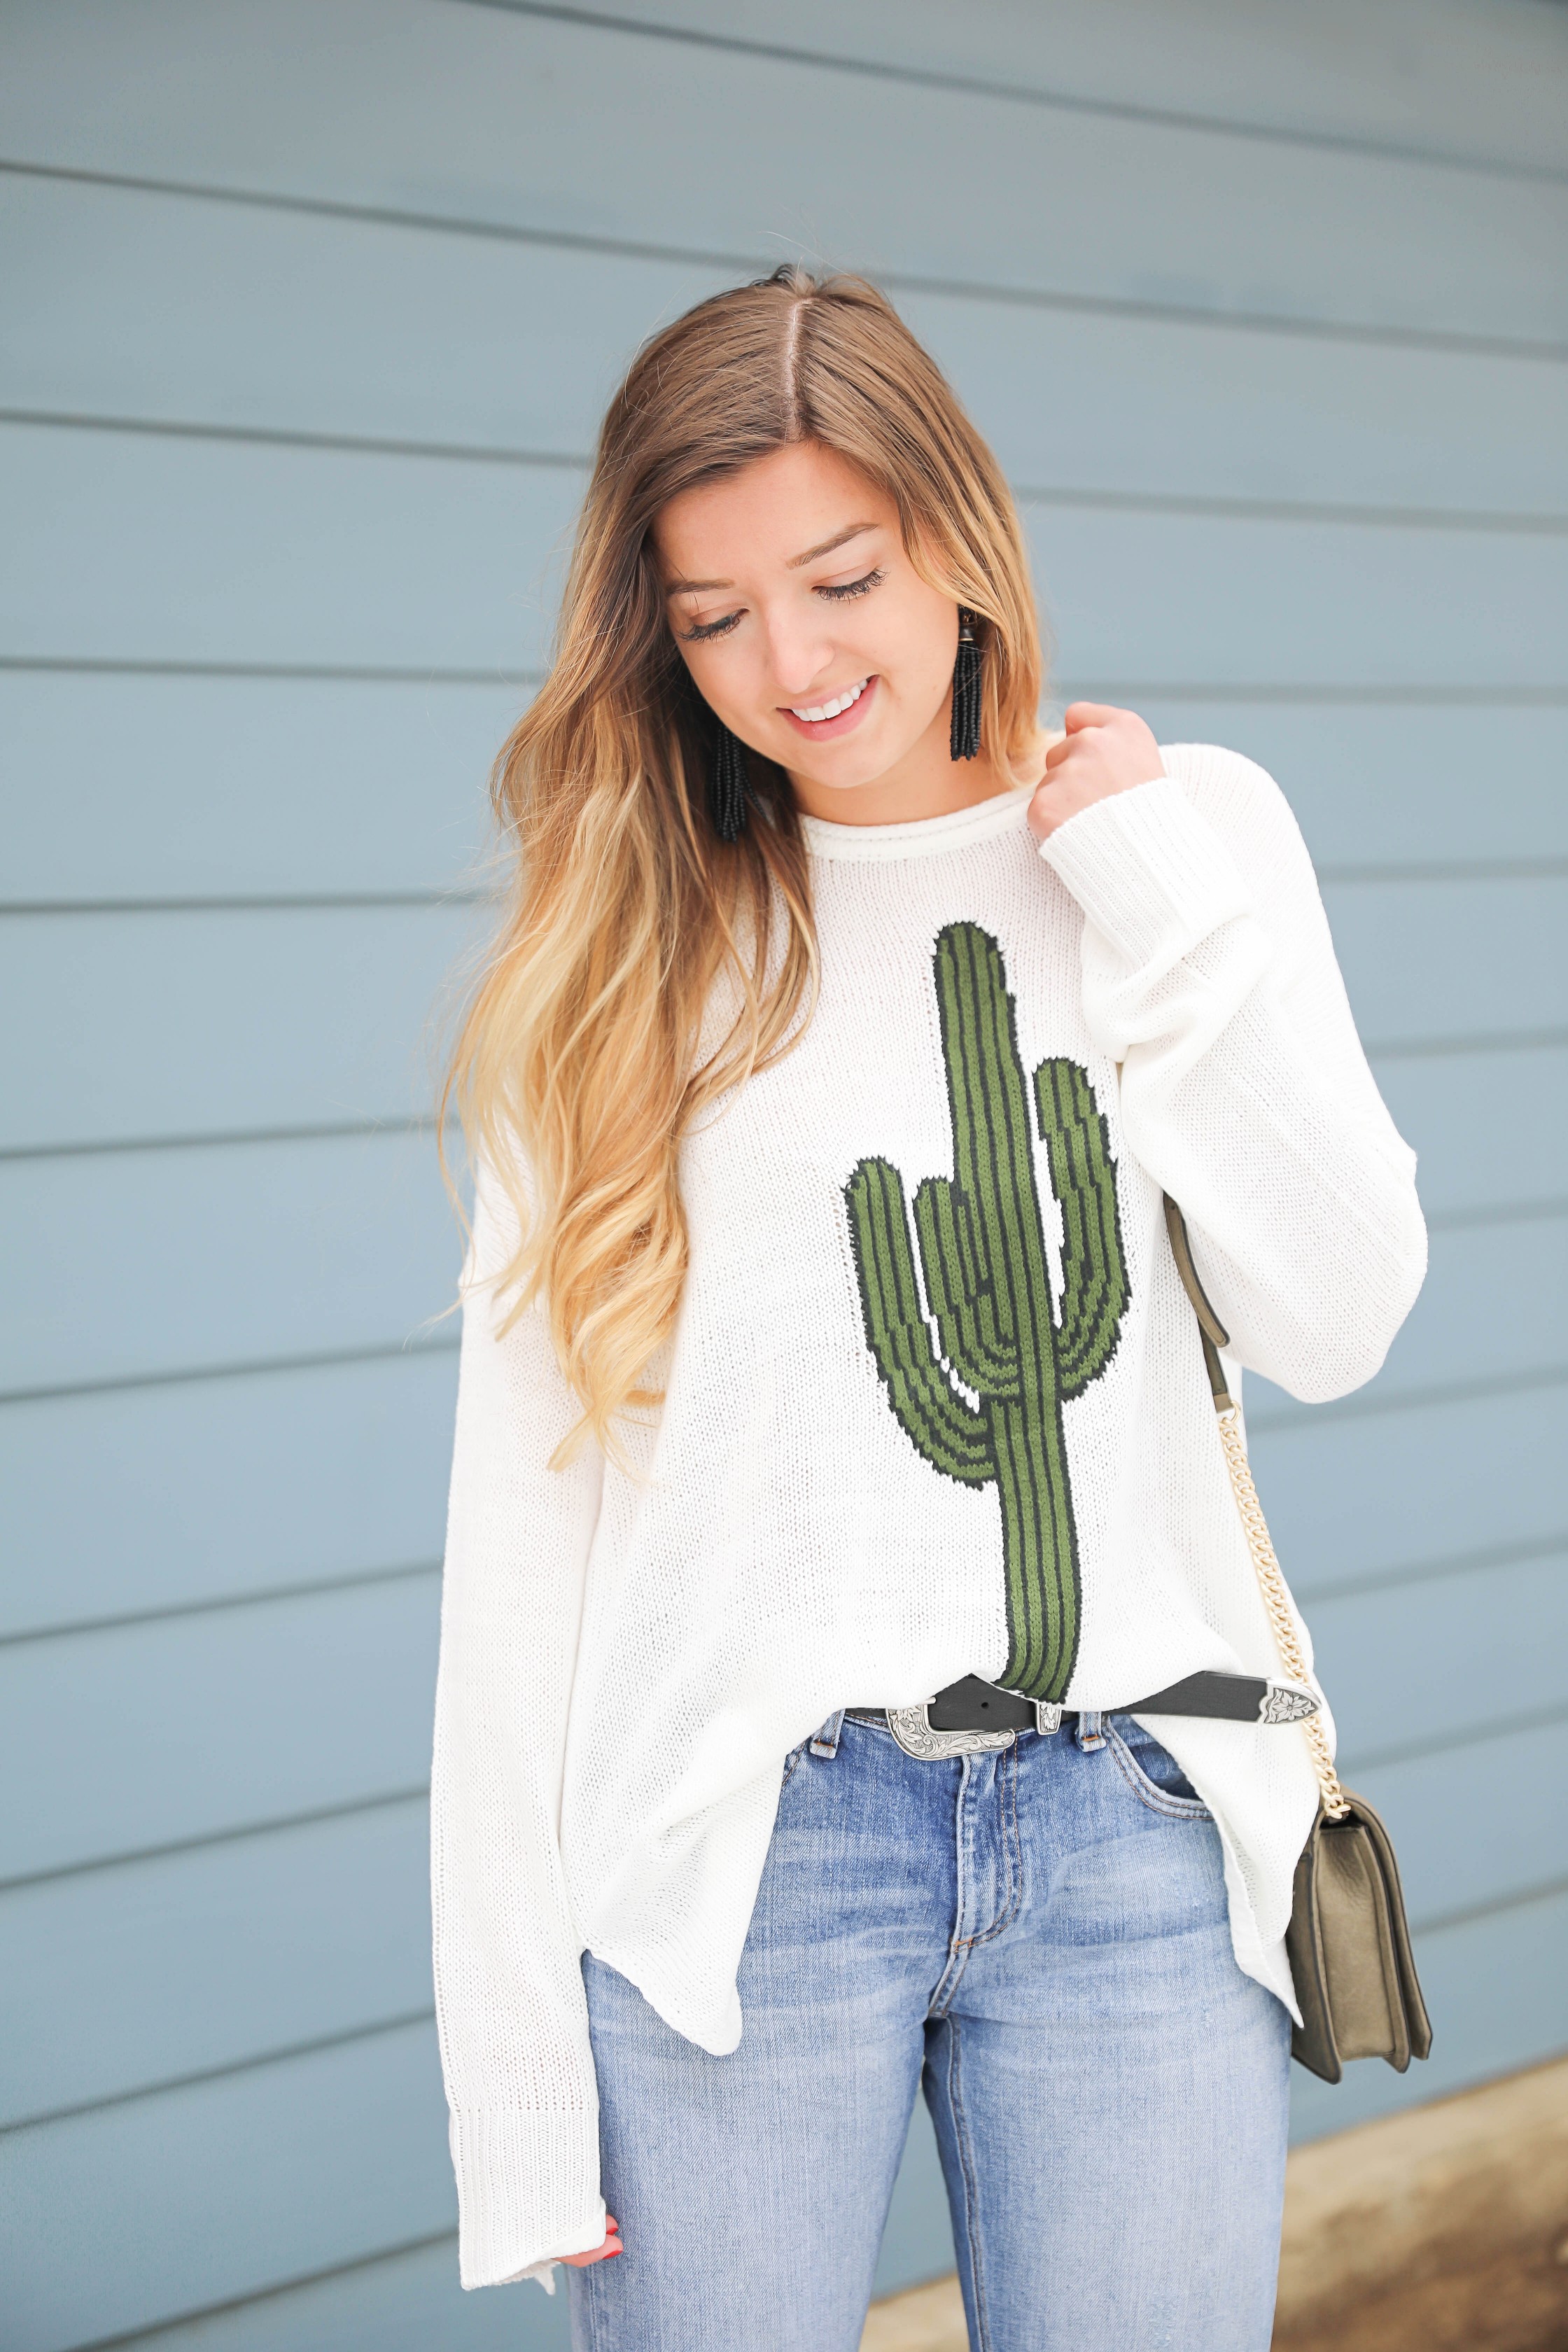 Lookin’ Sharp in a Cactus Sweater | OOTD – Lauren Emily Wiltse